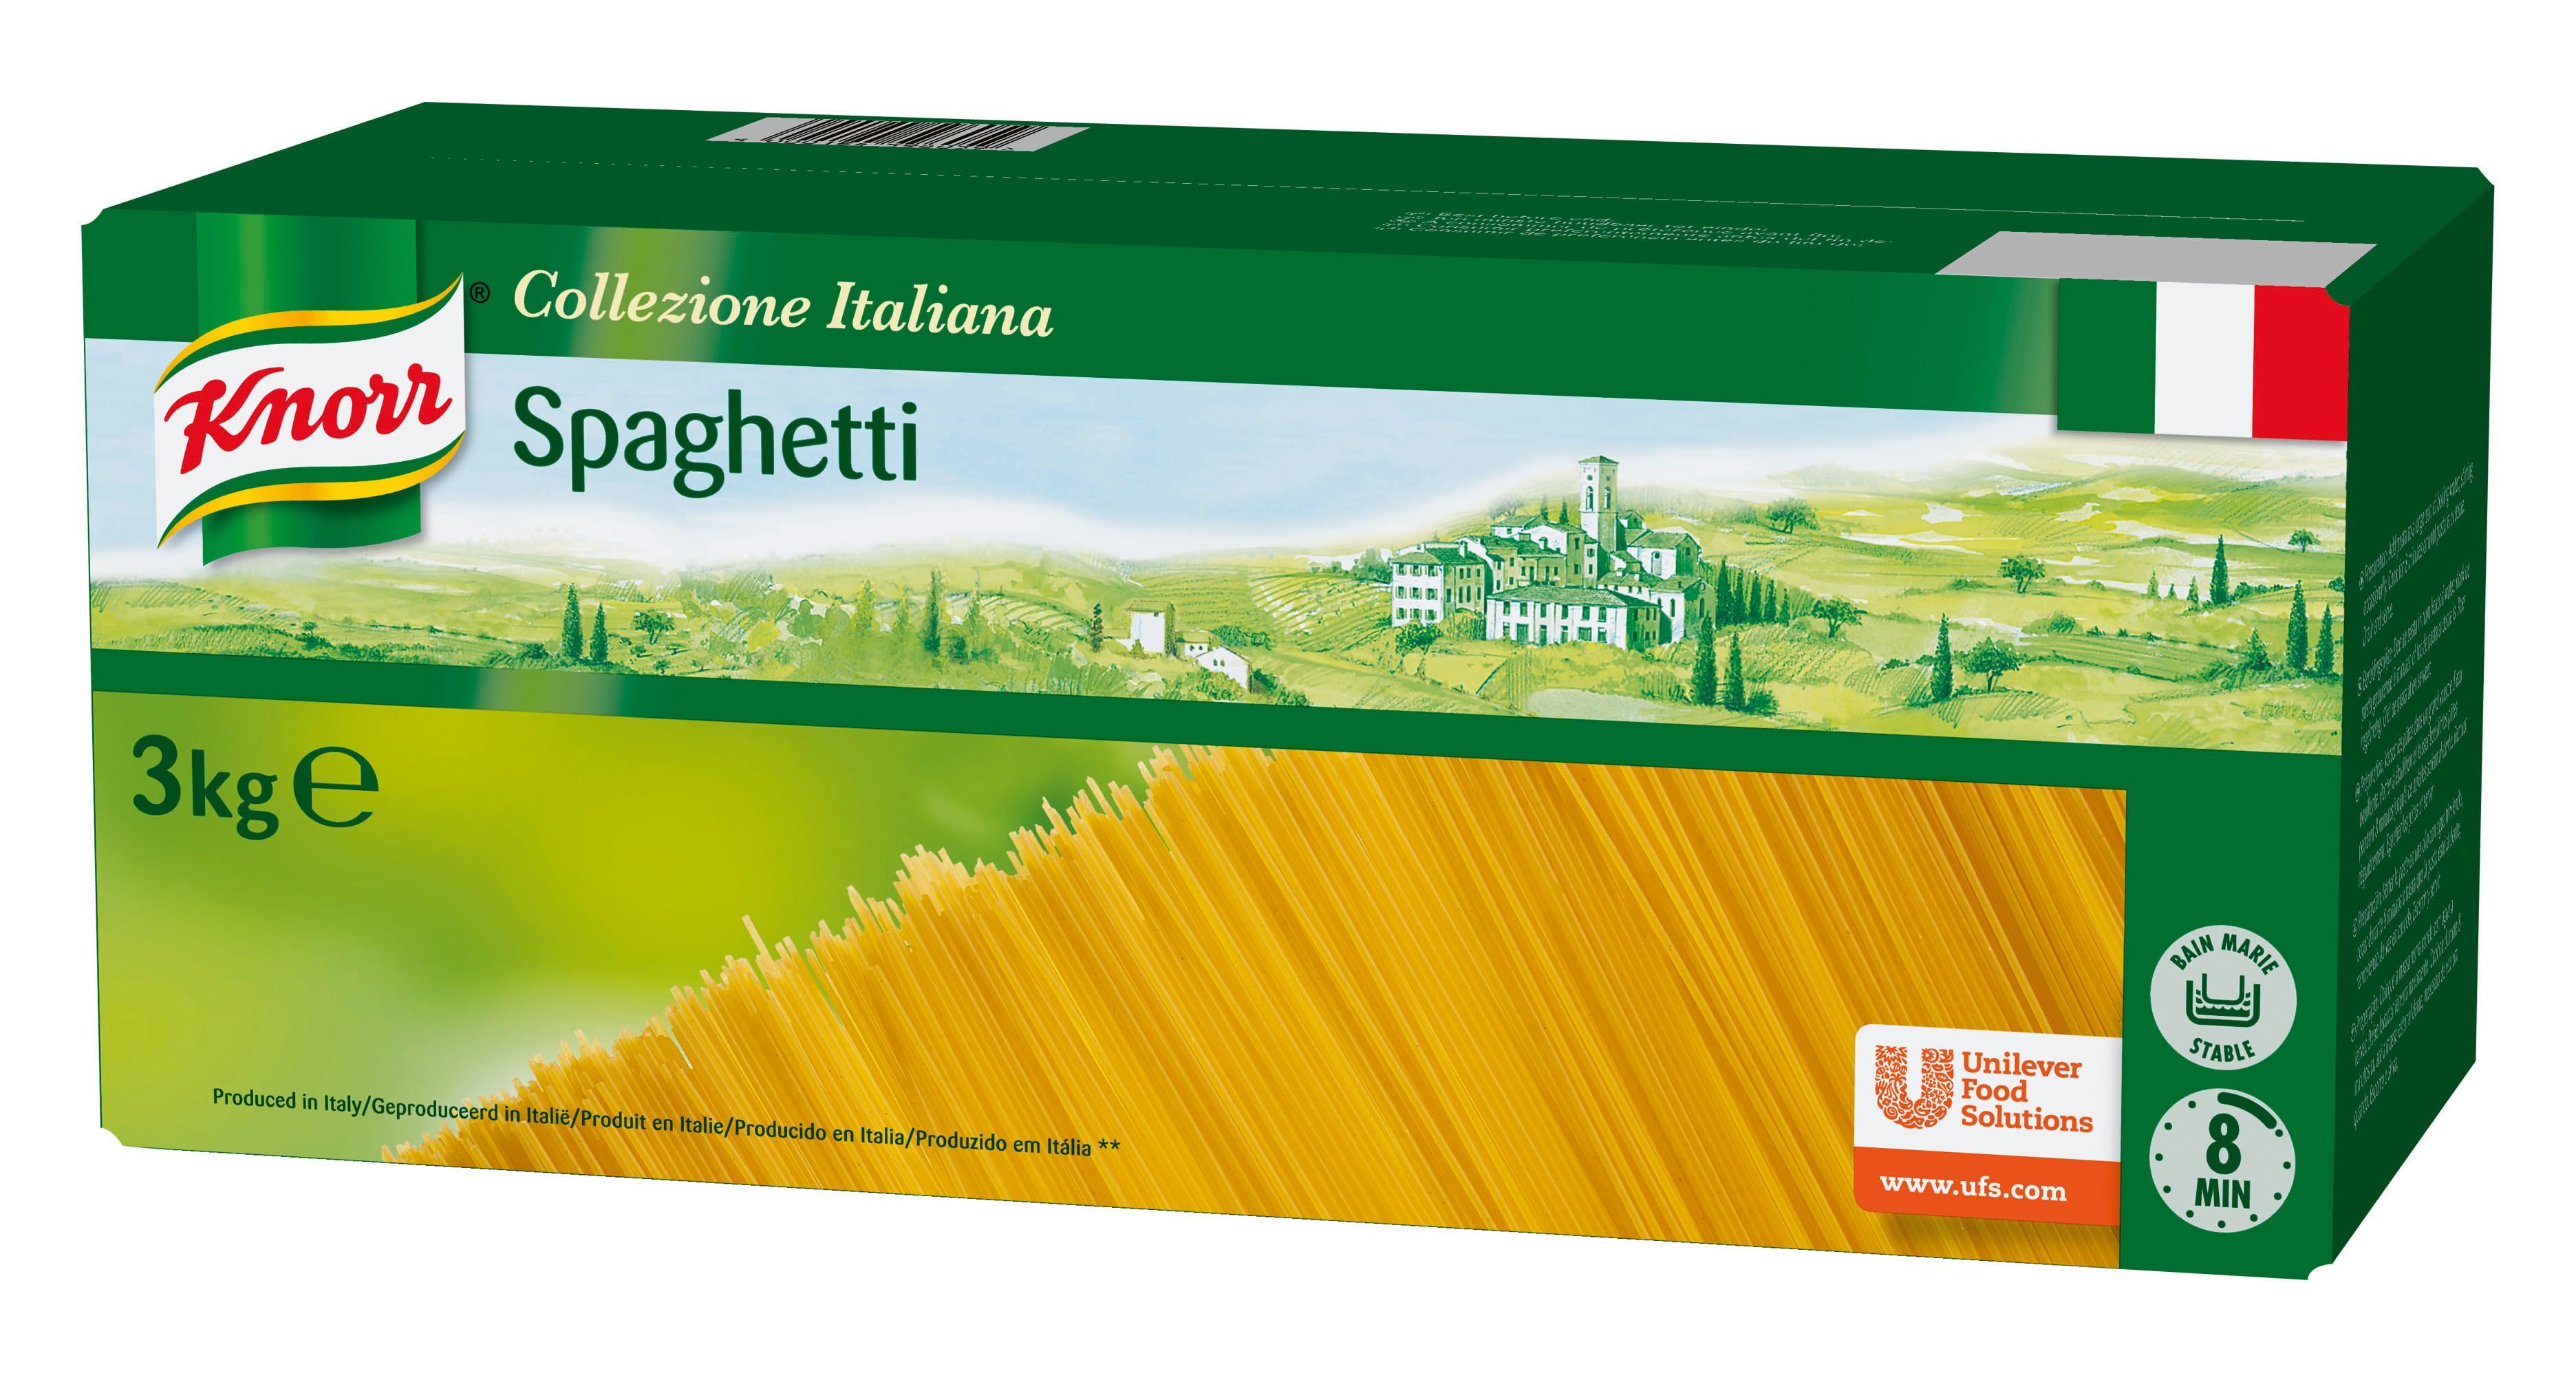 Knorr spaghetti 3kg collezione italiana